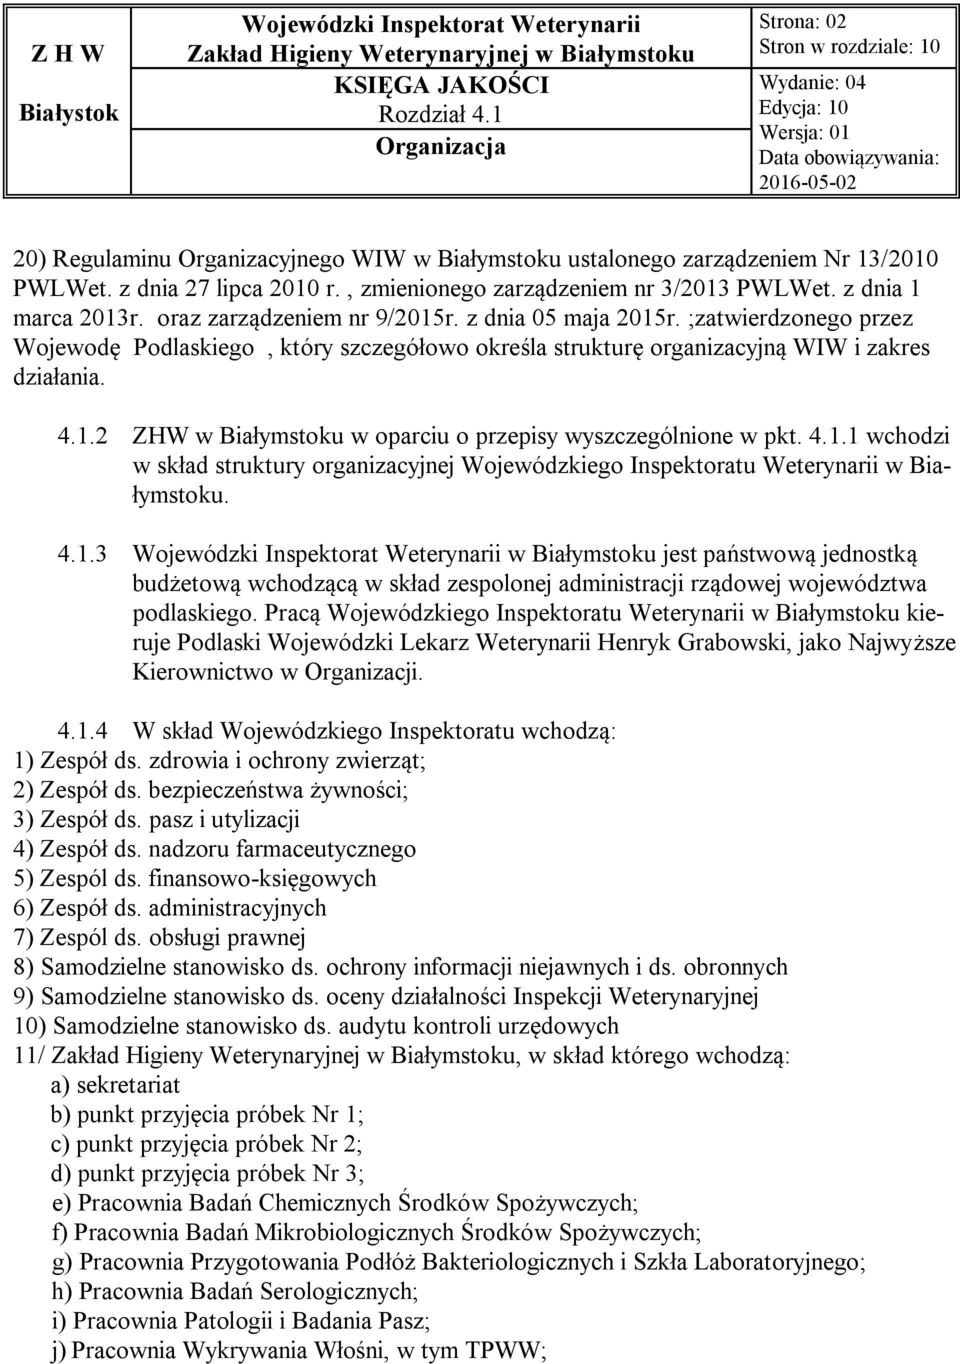 4.1.1 wchodzi w skład struktury organizacyjnej Wojewódzkiego Inspektoratu Weterynarii w Białymstoku. 4.1.3 w Białymstoku jest państwową jednostką budżetową wchodzącą w skład zespolonej administracji rządowej województwa podlaskiego.